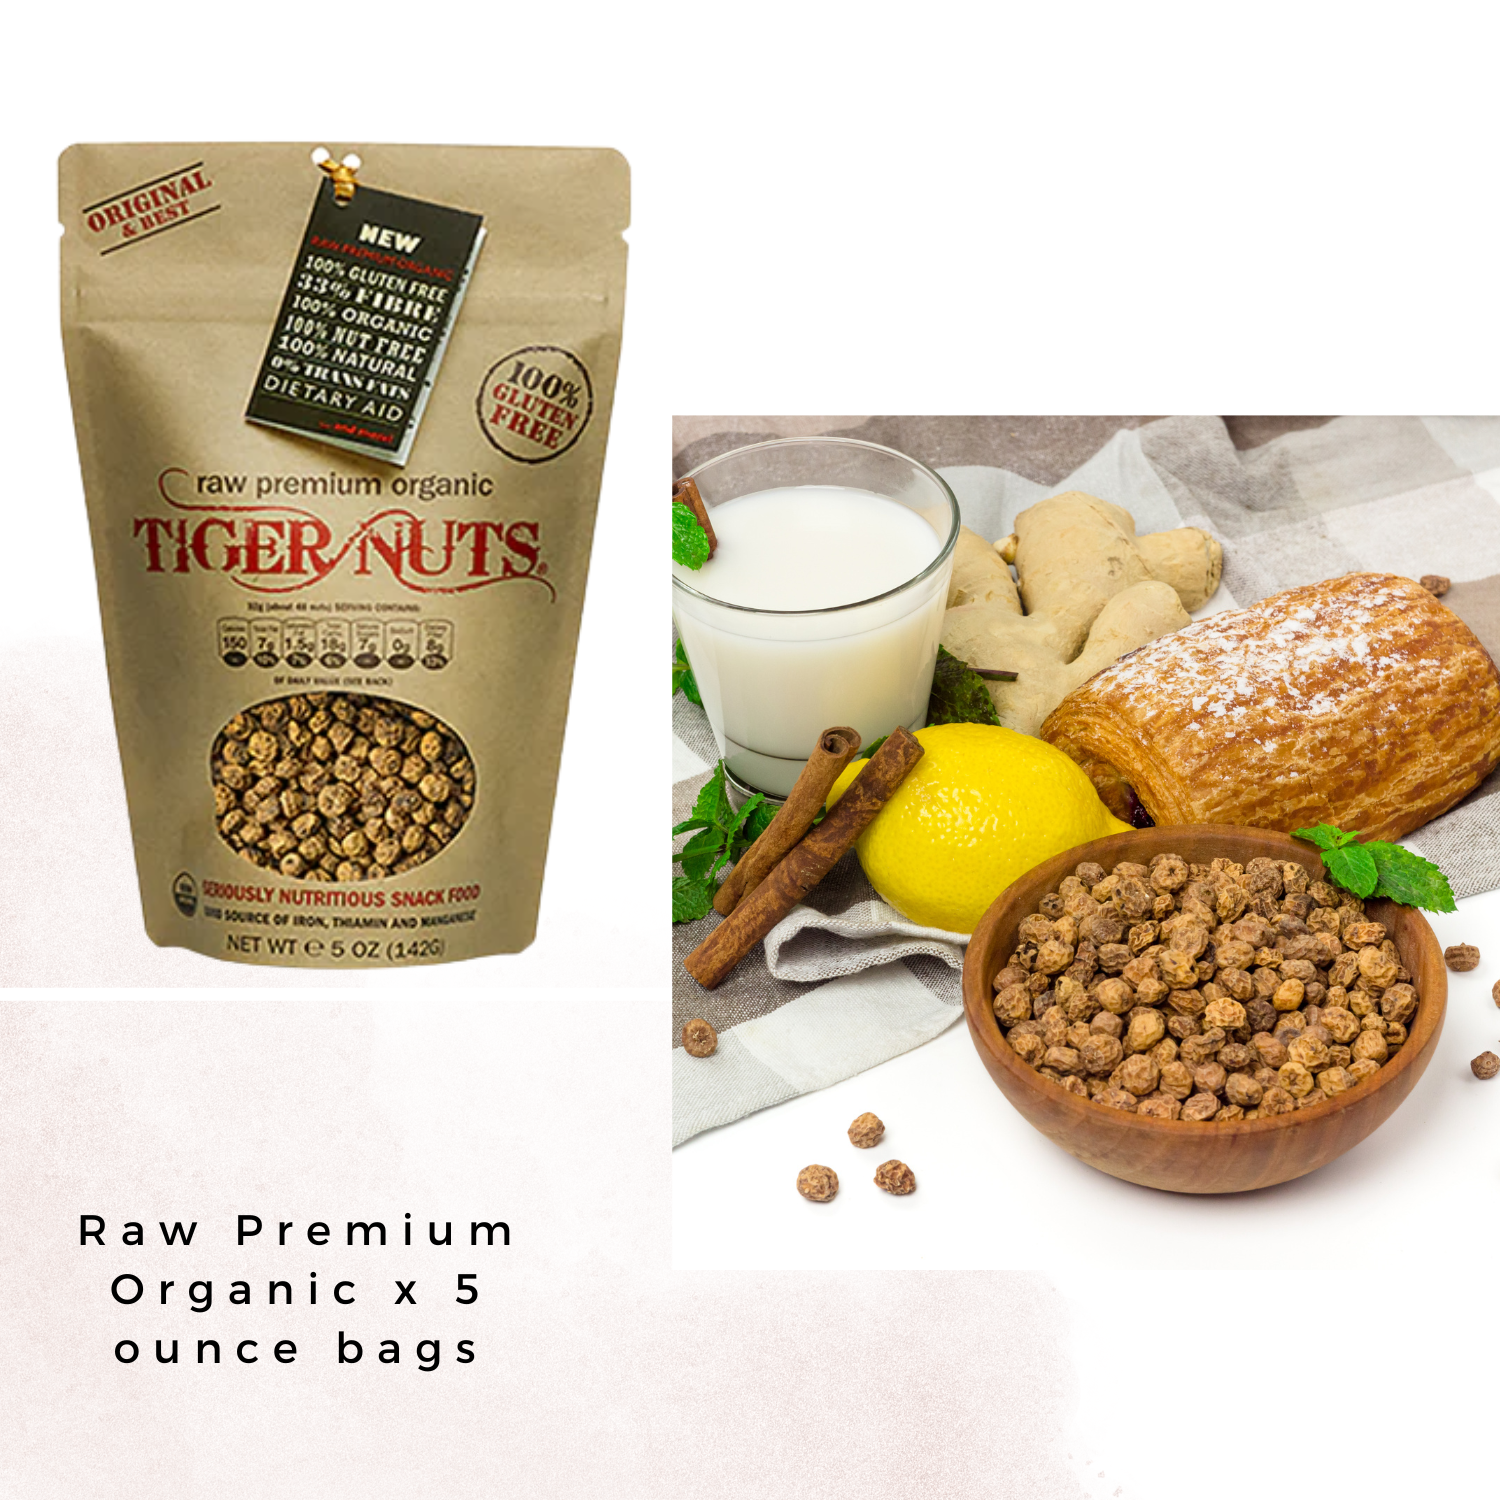 Tiger Nuts Flour x 1 lbs bags - Gluten Free, Organic, Nut Free!, 1